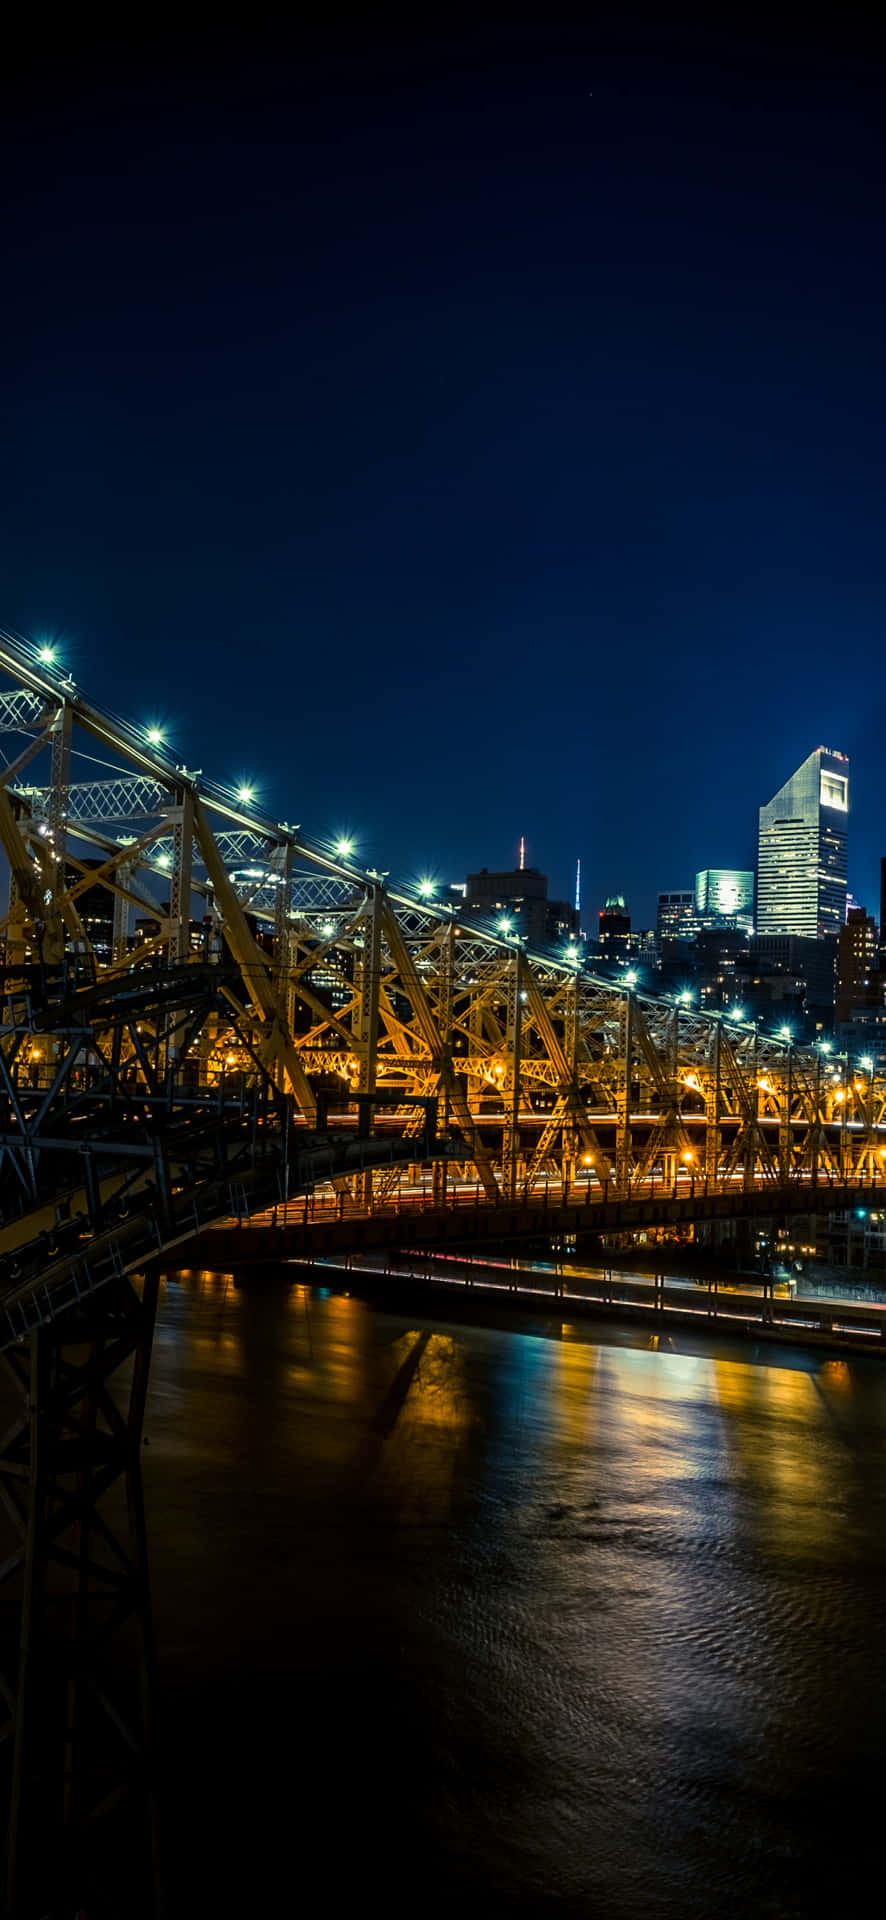 Nighttime Cityscape Bridge Illumination Wallpaper